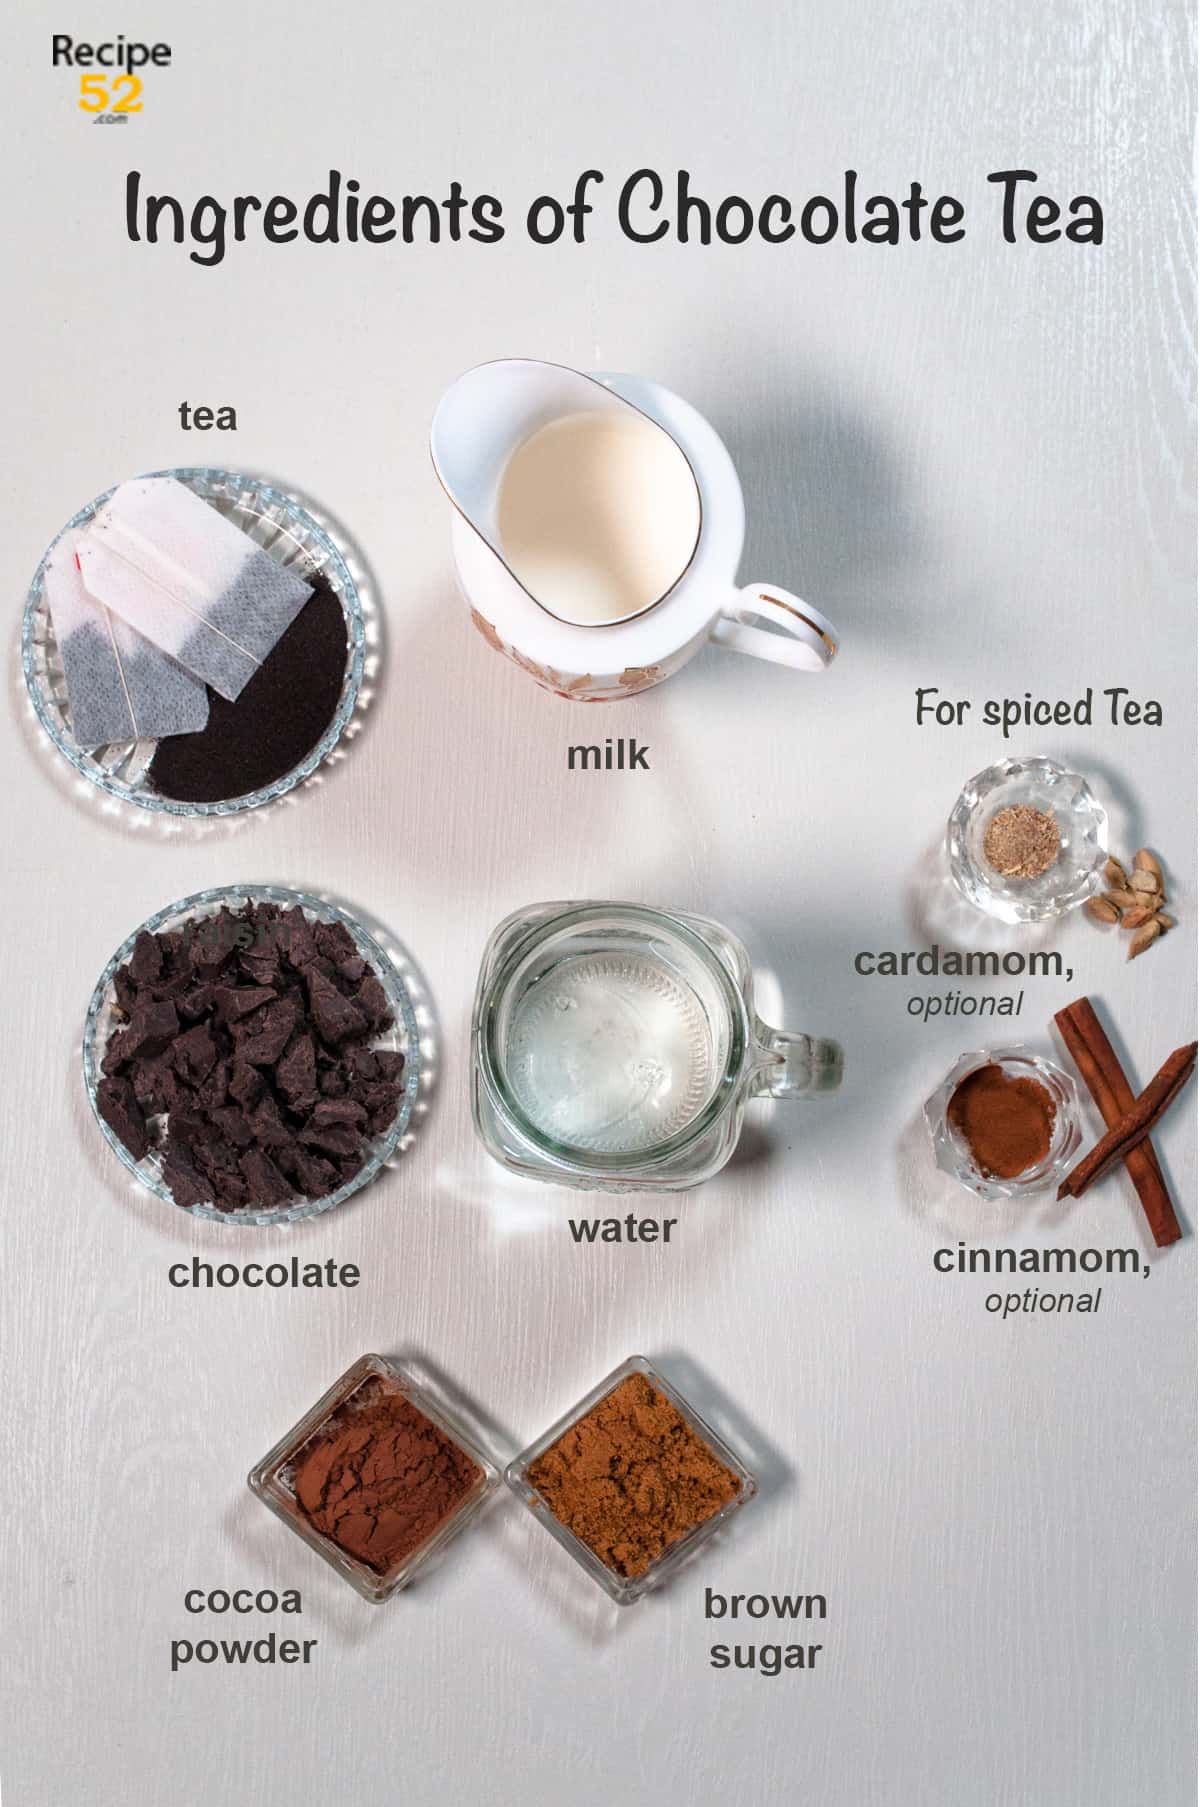 ingredients of chocolate tea,